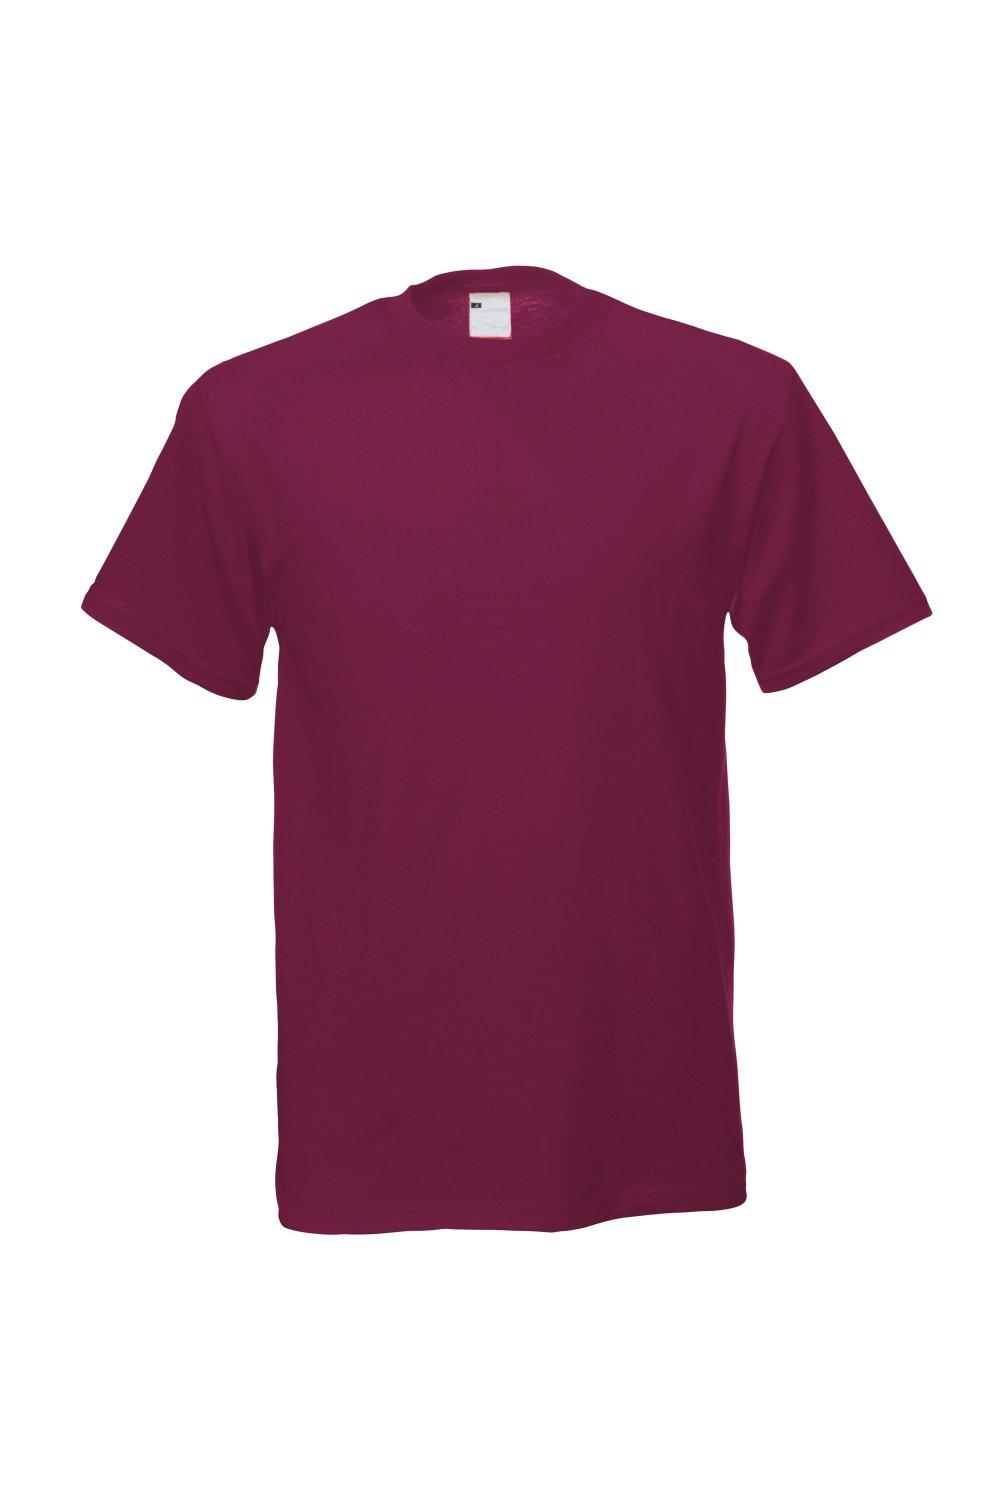 Повседневная футболка с коротким рукавом Universal Textiles, красный мужская футболка бабочка 2xl серый меланж